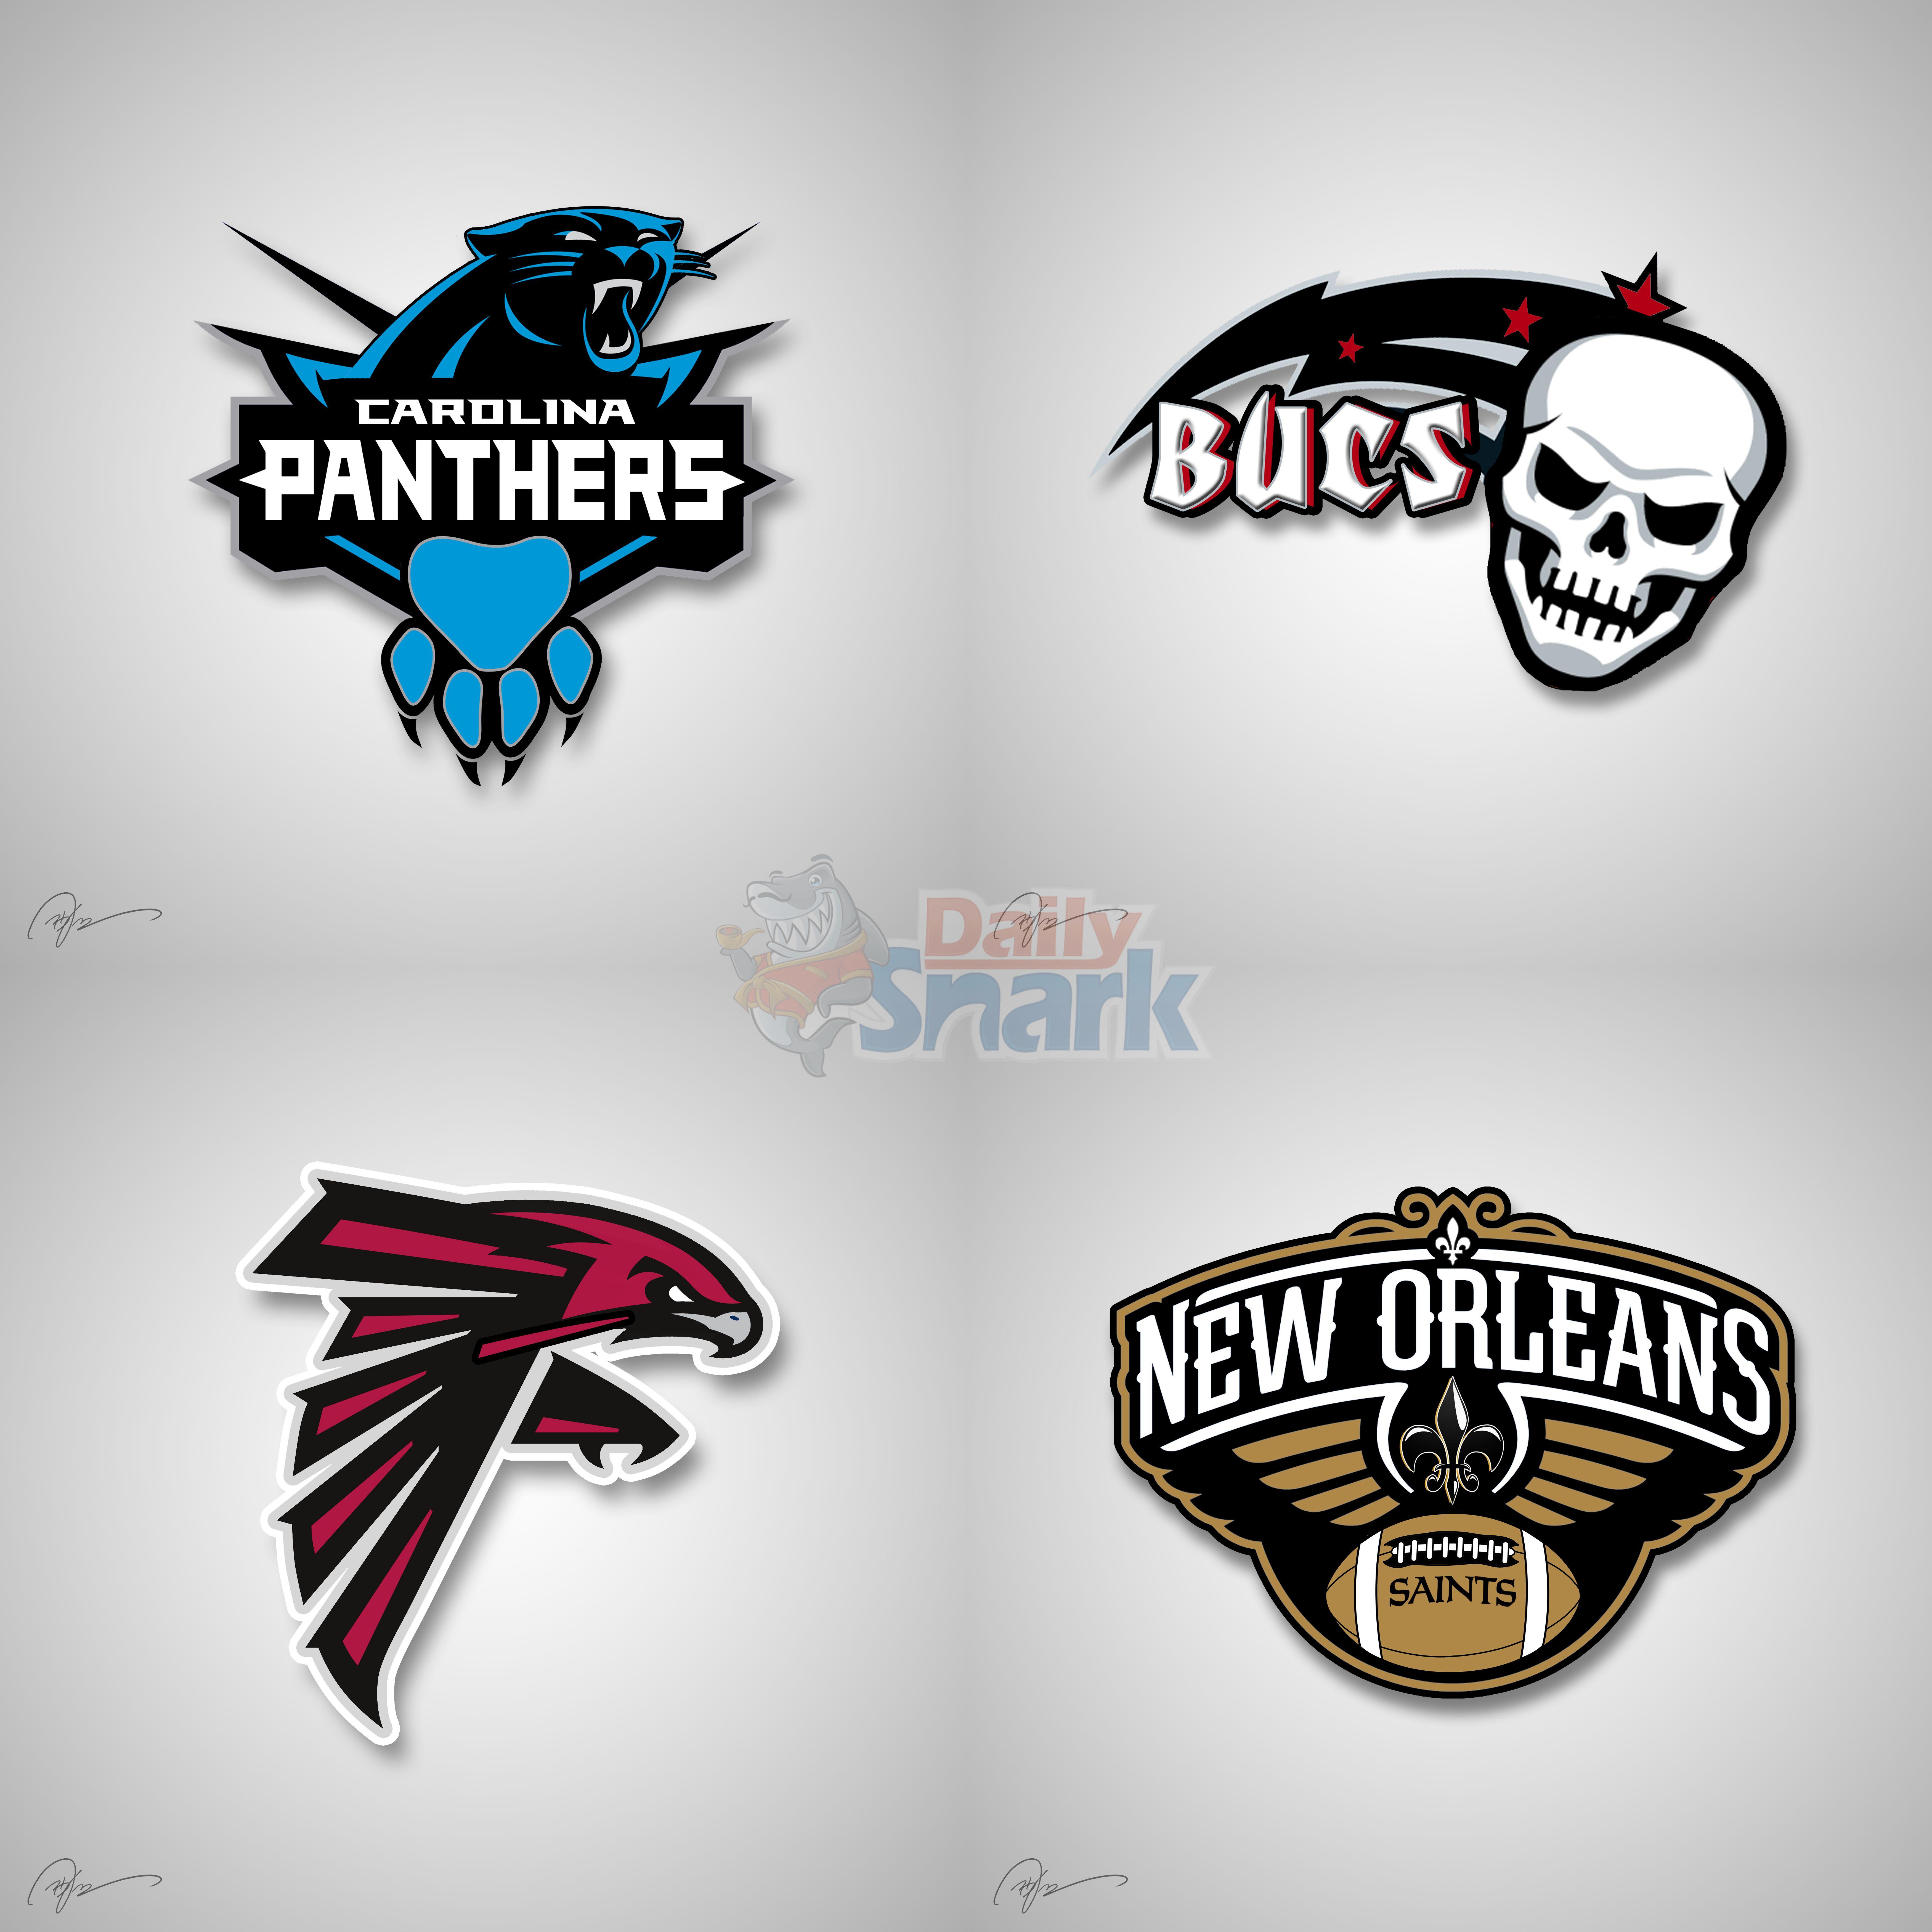 Cool NFL Team Logo - NFL Logos mixed with NBA Logos |